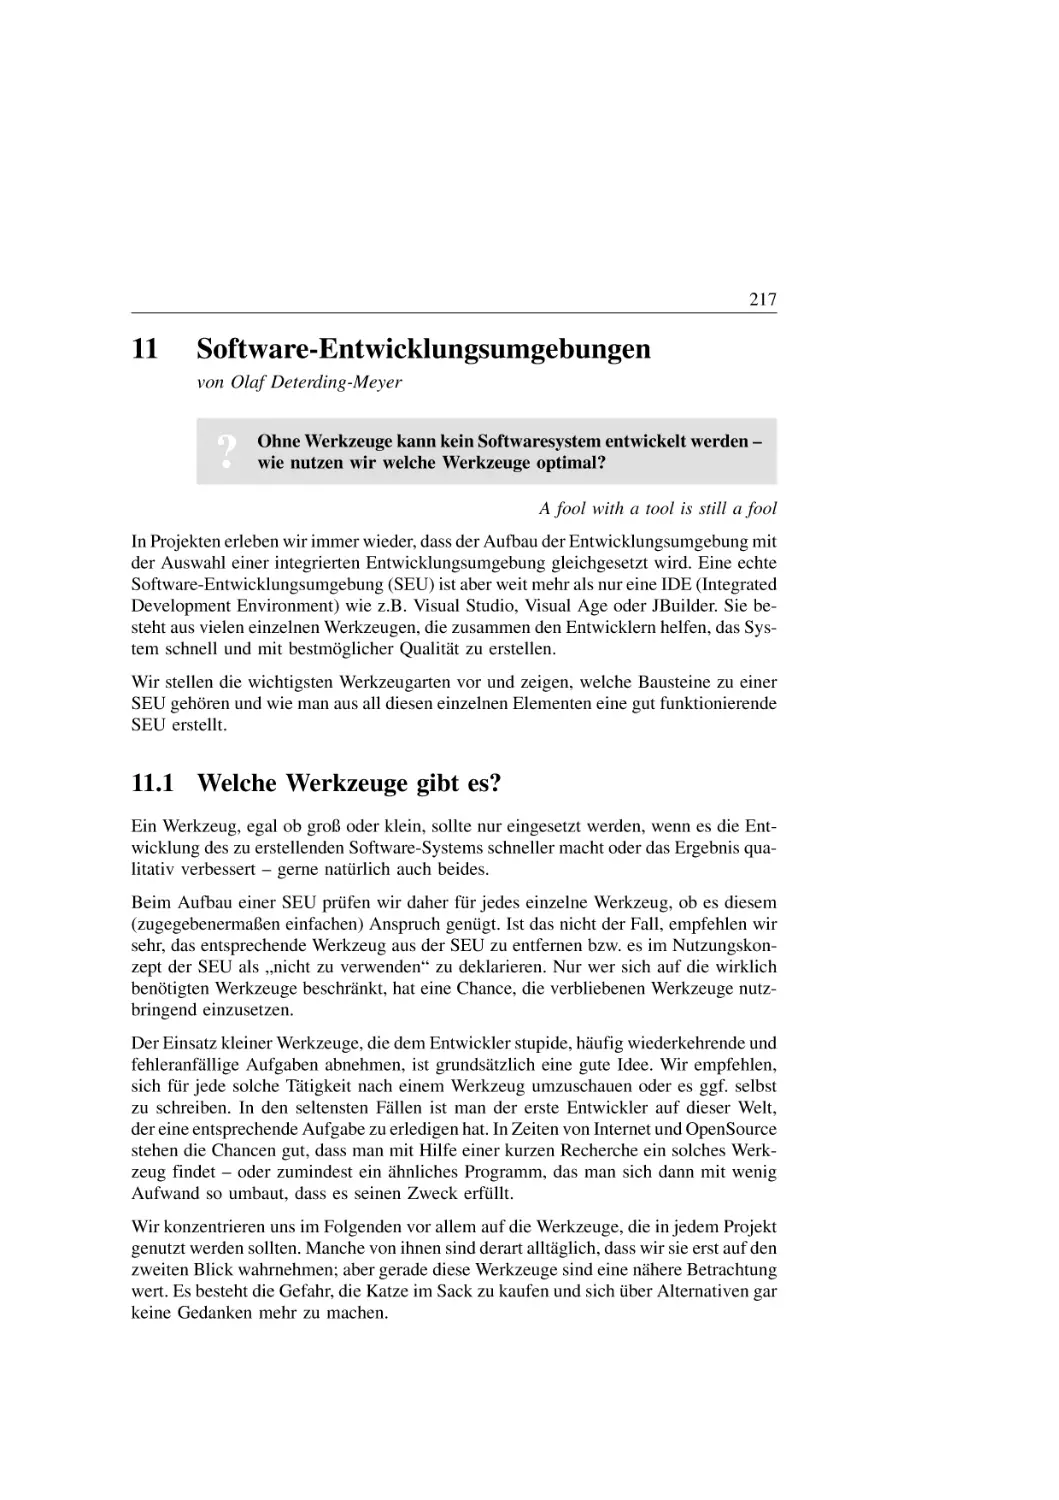 11. Software-Entwicklungsumgebungen
11.1 Welche Werkzeuge gibt es?